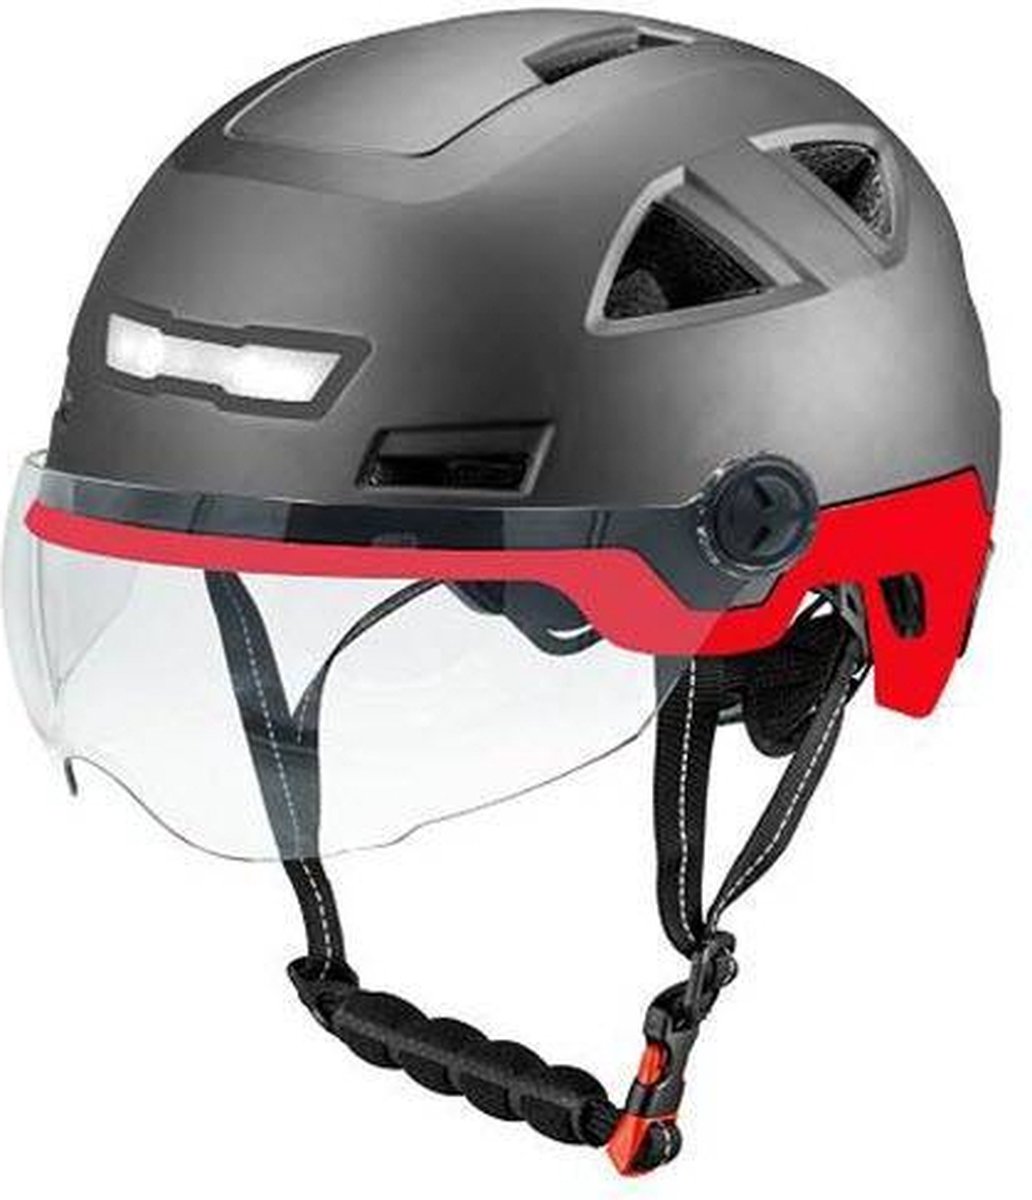 Vito E-Light zwart rood met vizier L/XL 58-61 cm | Speed Pedelec Helm | NTA 8776 goedgekeurd | Snorfiets helm Snorscooter | Geschikt voor Helmplicht Blauw Kenteken